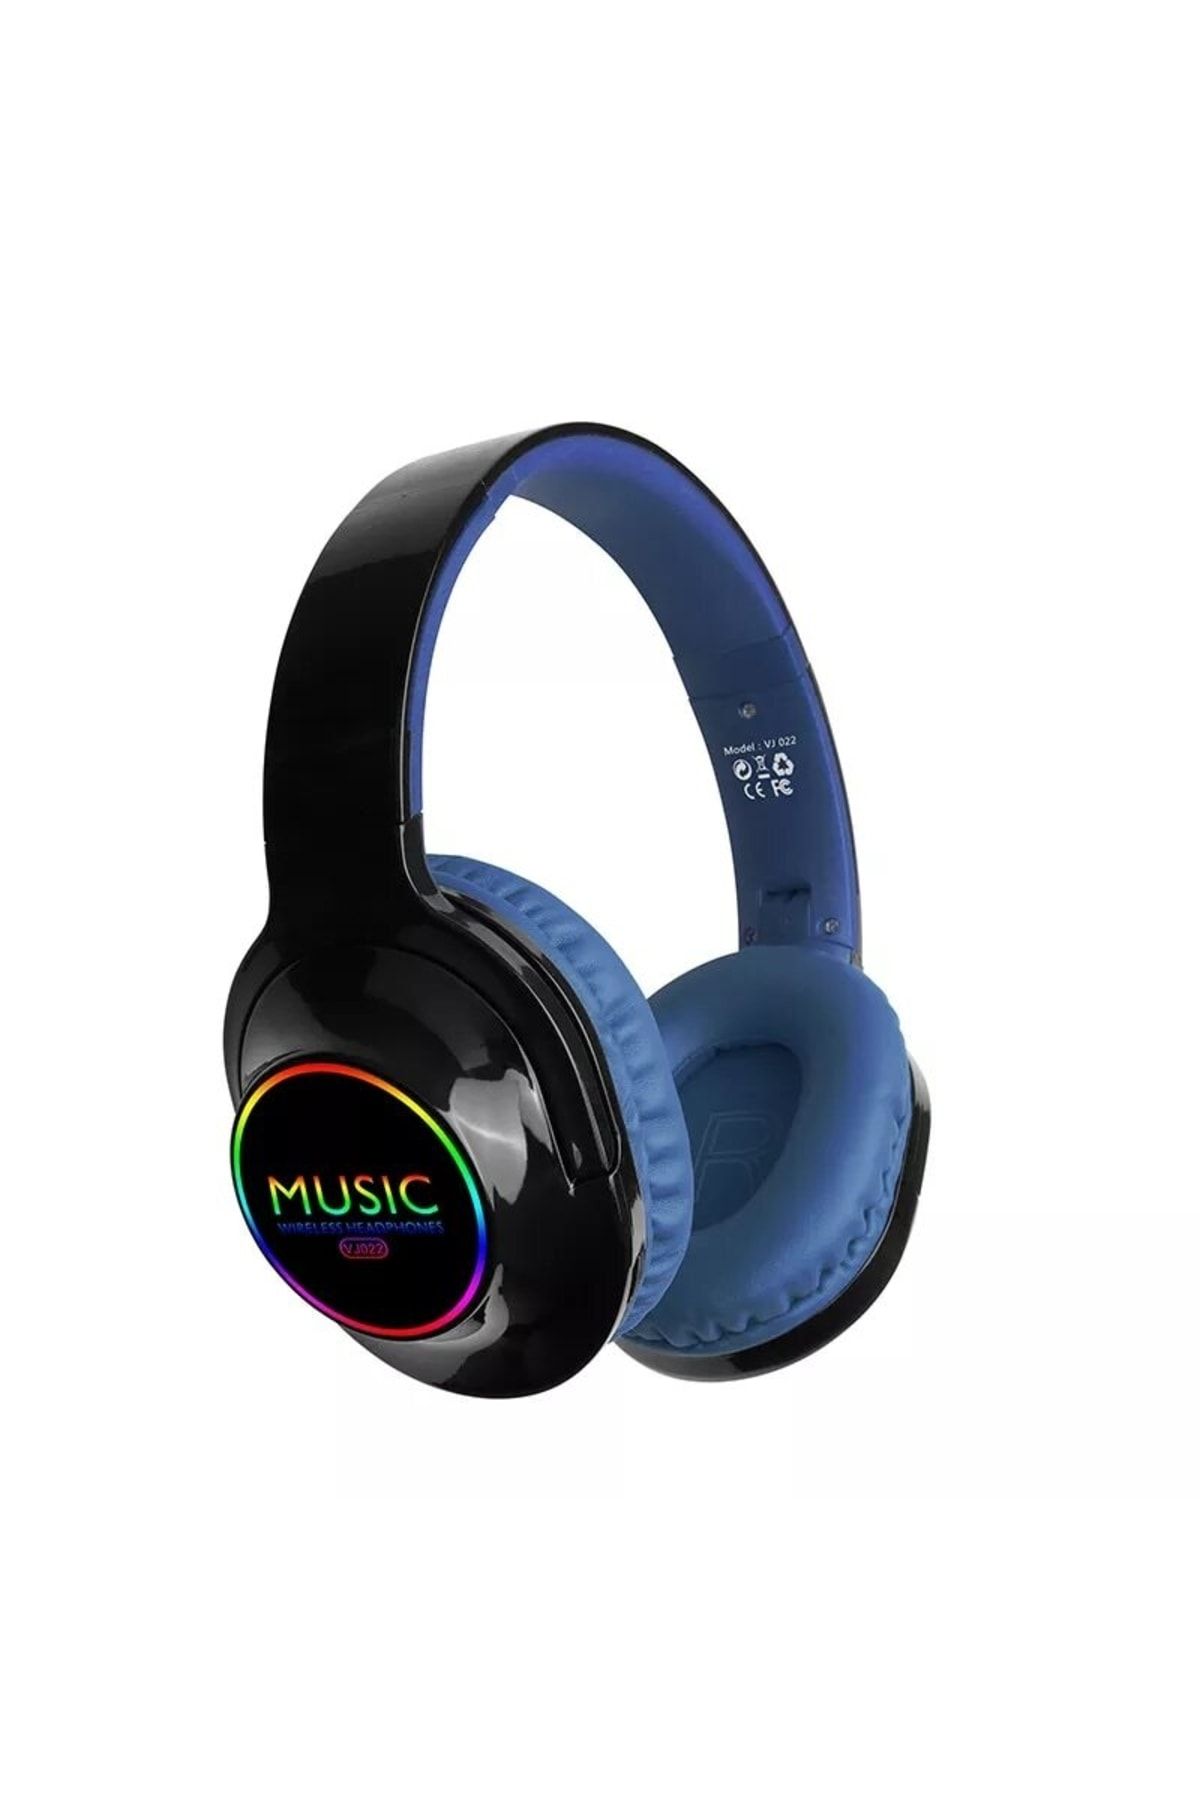 T G Kablosuz Bluetooth Kulak Üstü Kulaklık Stereo Yüksek Ses Akıllı Renkli Led Kulaklık Bluetooth 5,0